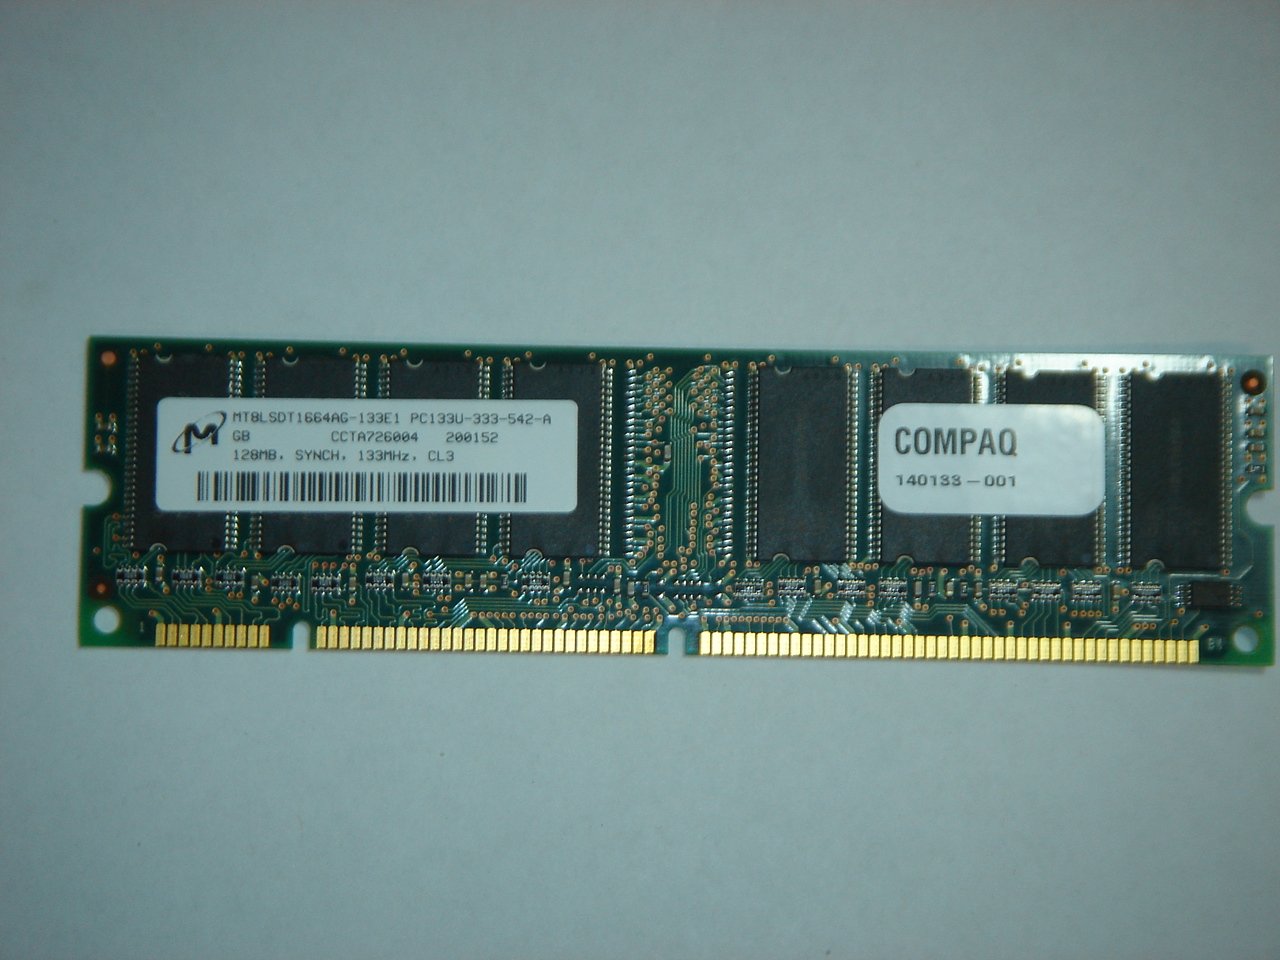 Micron/Compaq 128MB PC133U-333-542-A 133 MHz